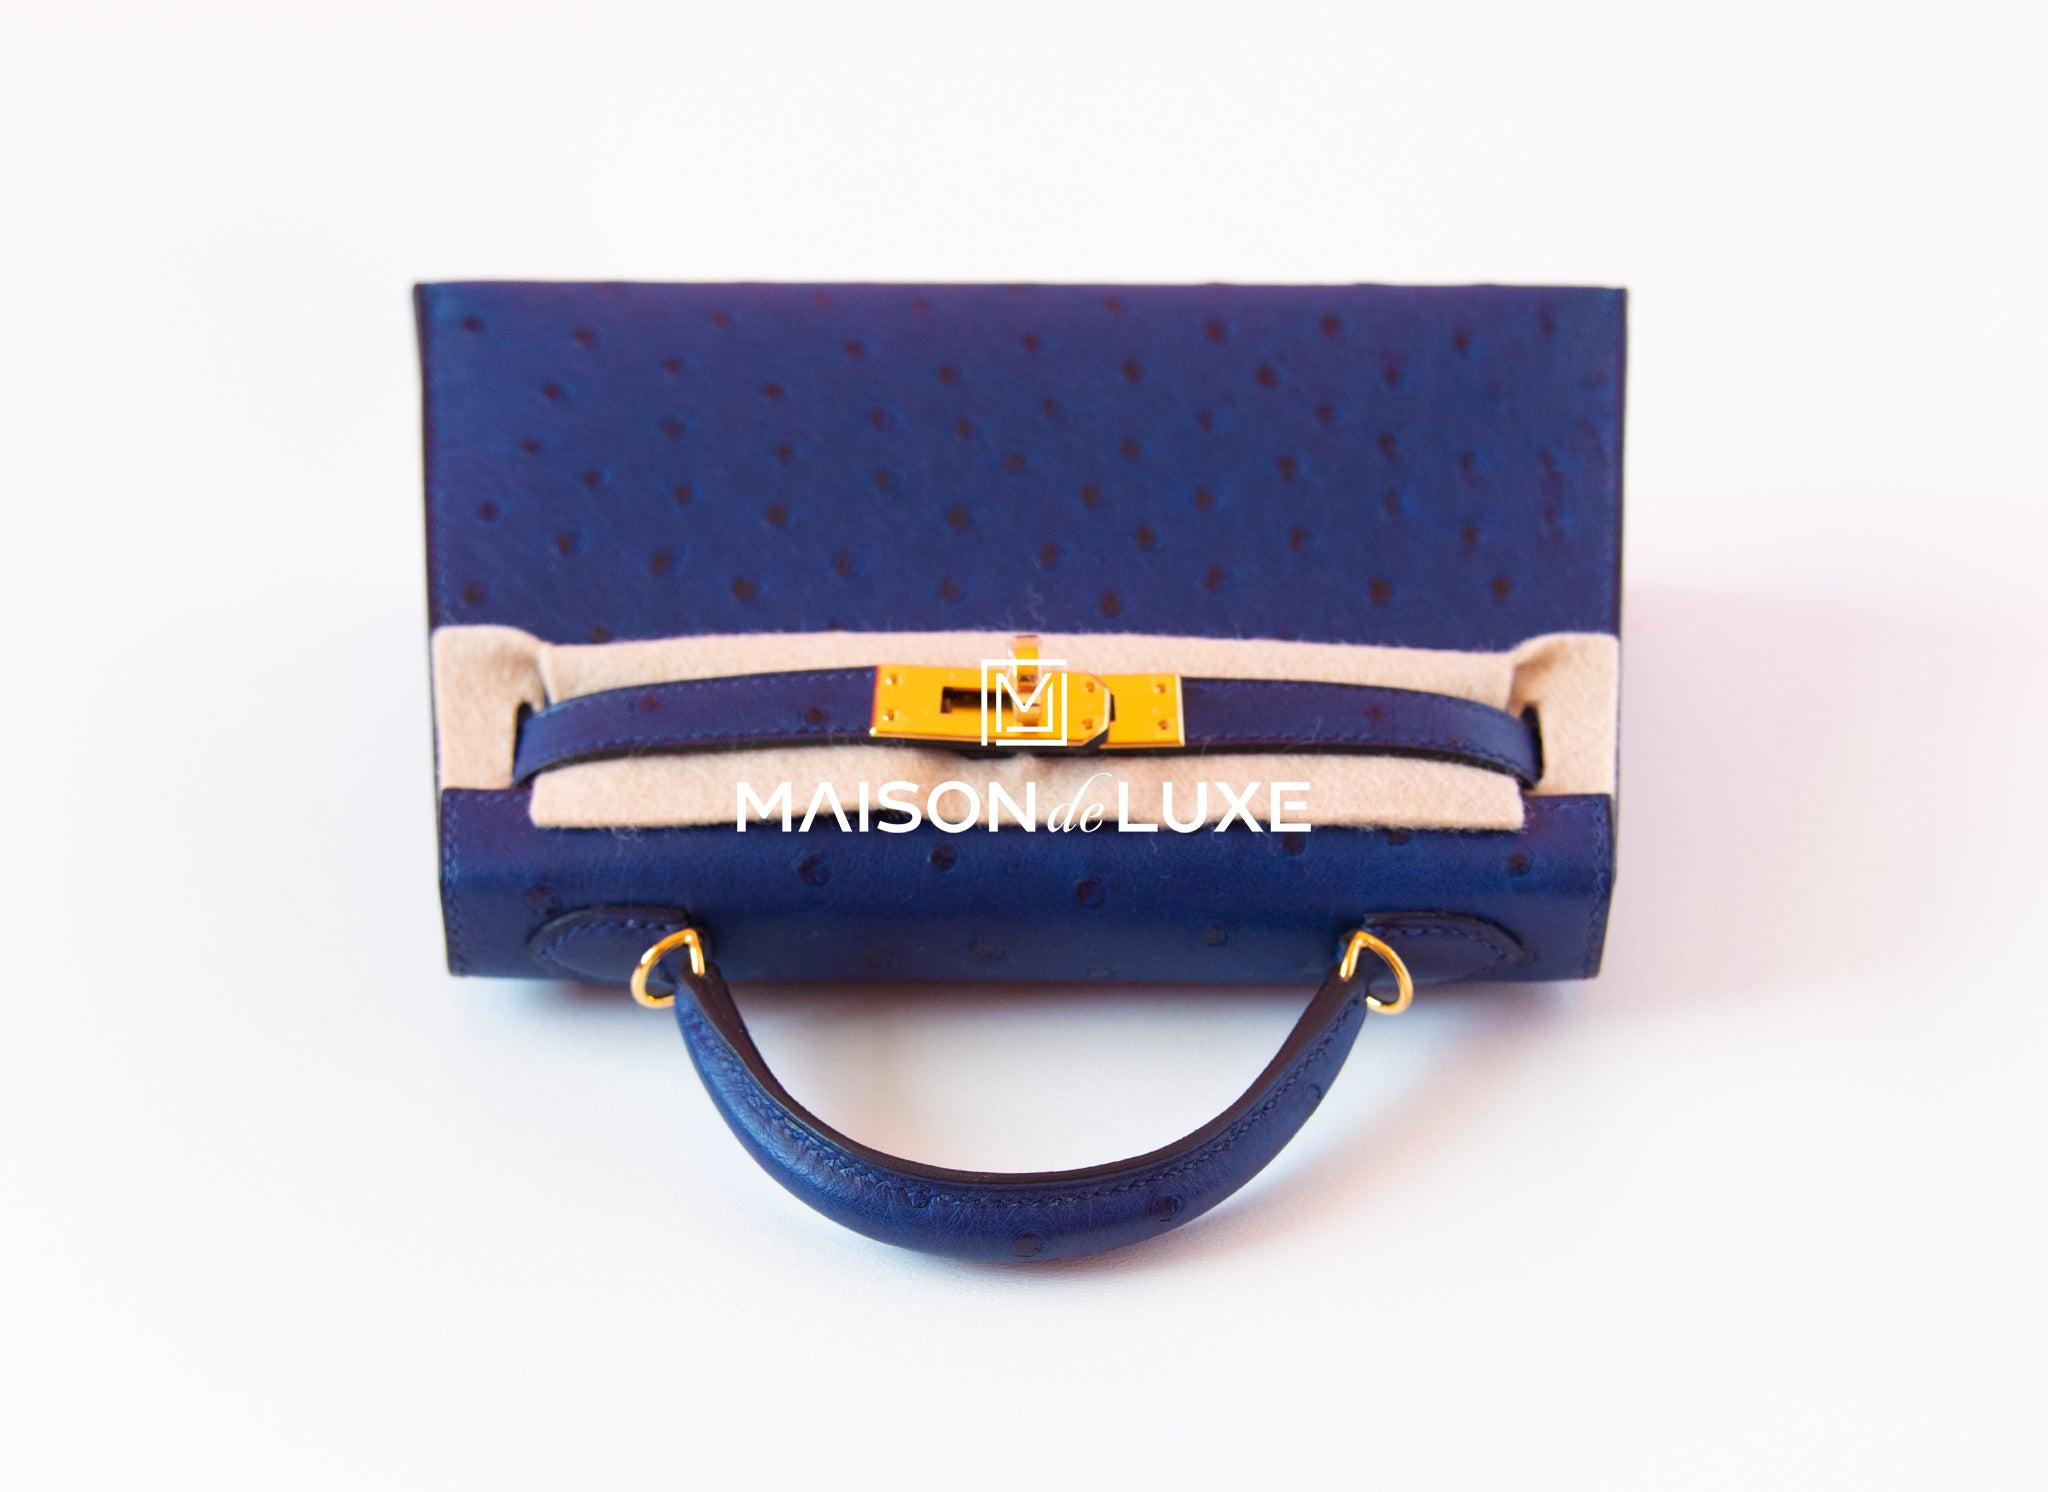 Hermès JPG Kelly Pochette Blue Iris Ostrich Gold Hardware